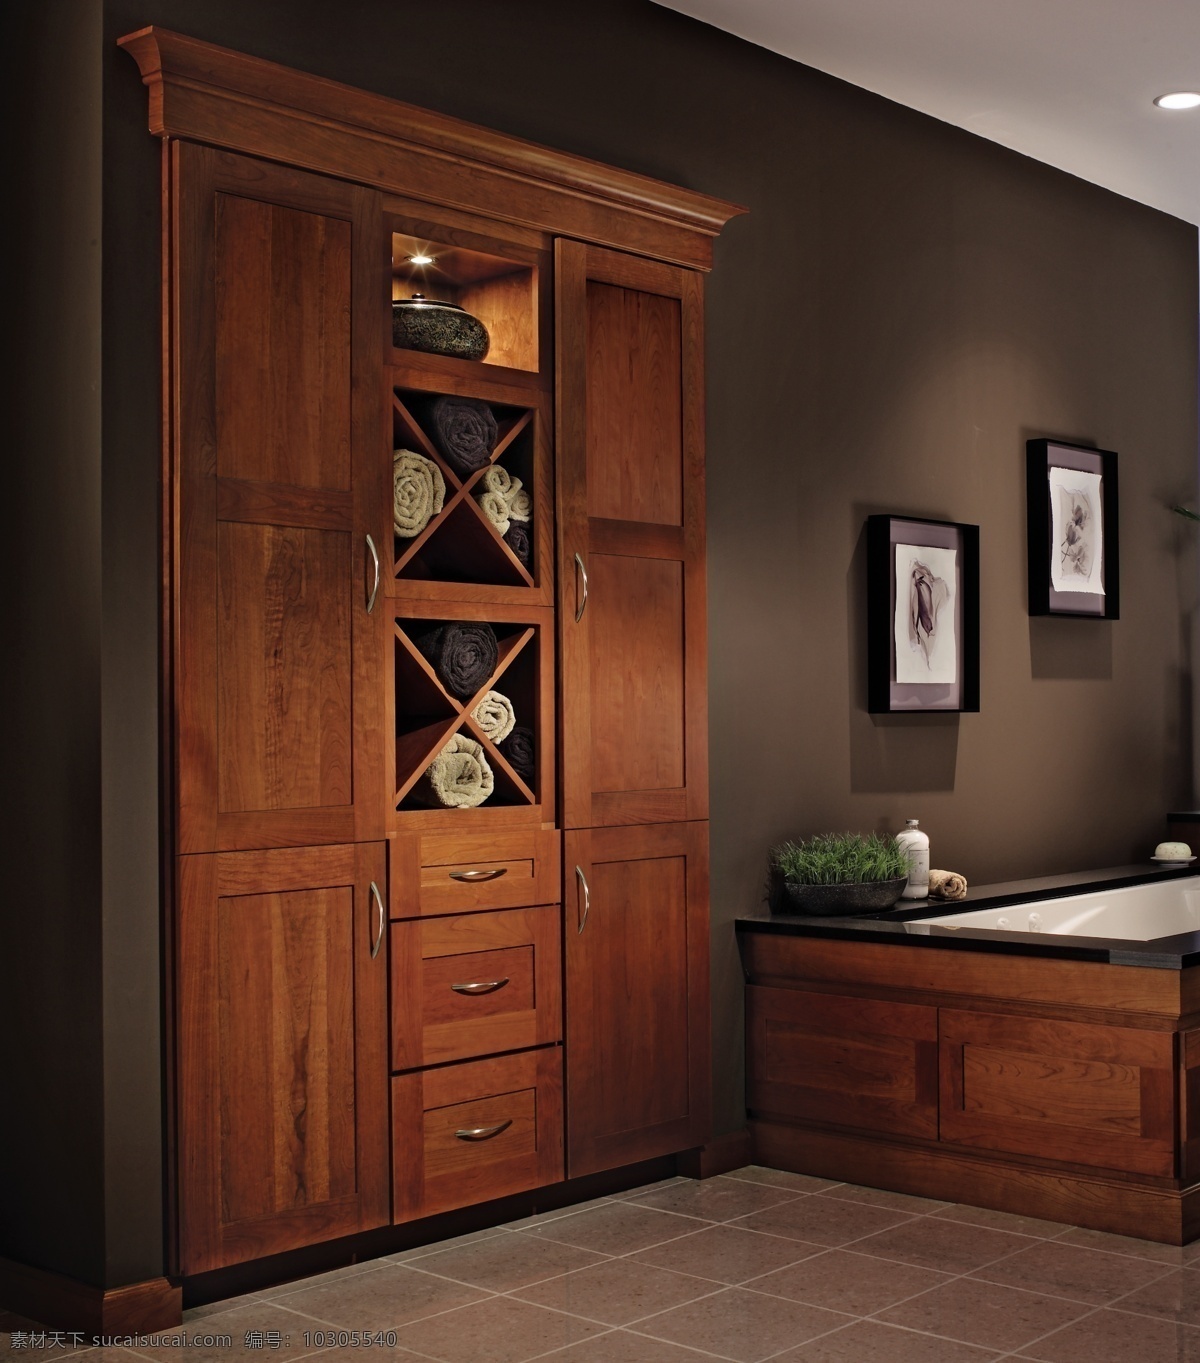 高精度 高清 高清图片 建筑园林 美式 欧式 实木 衣柜 浴室衣柜 室内摄影 装饰素材